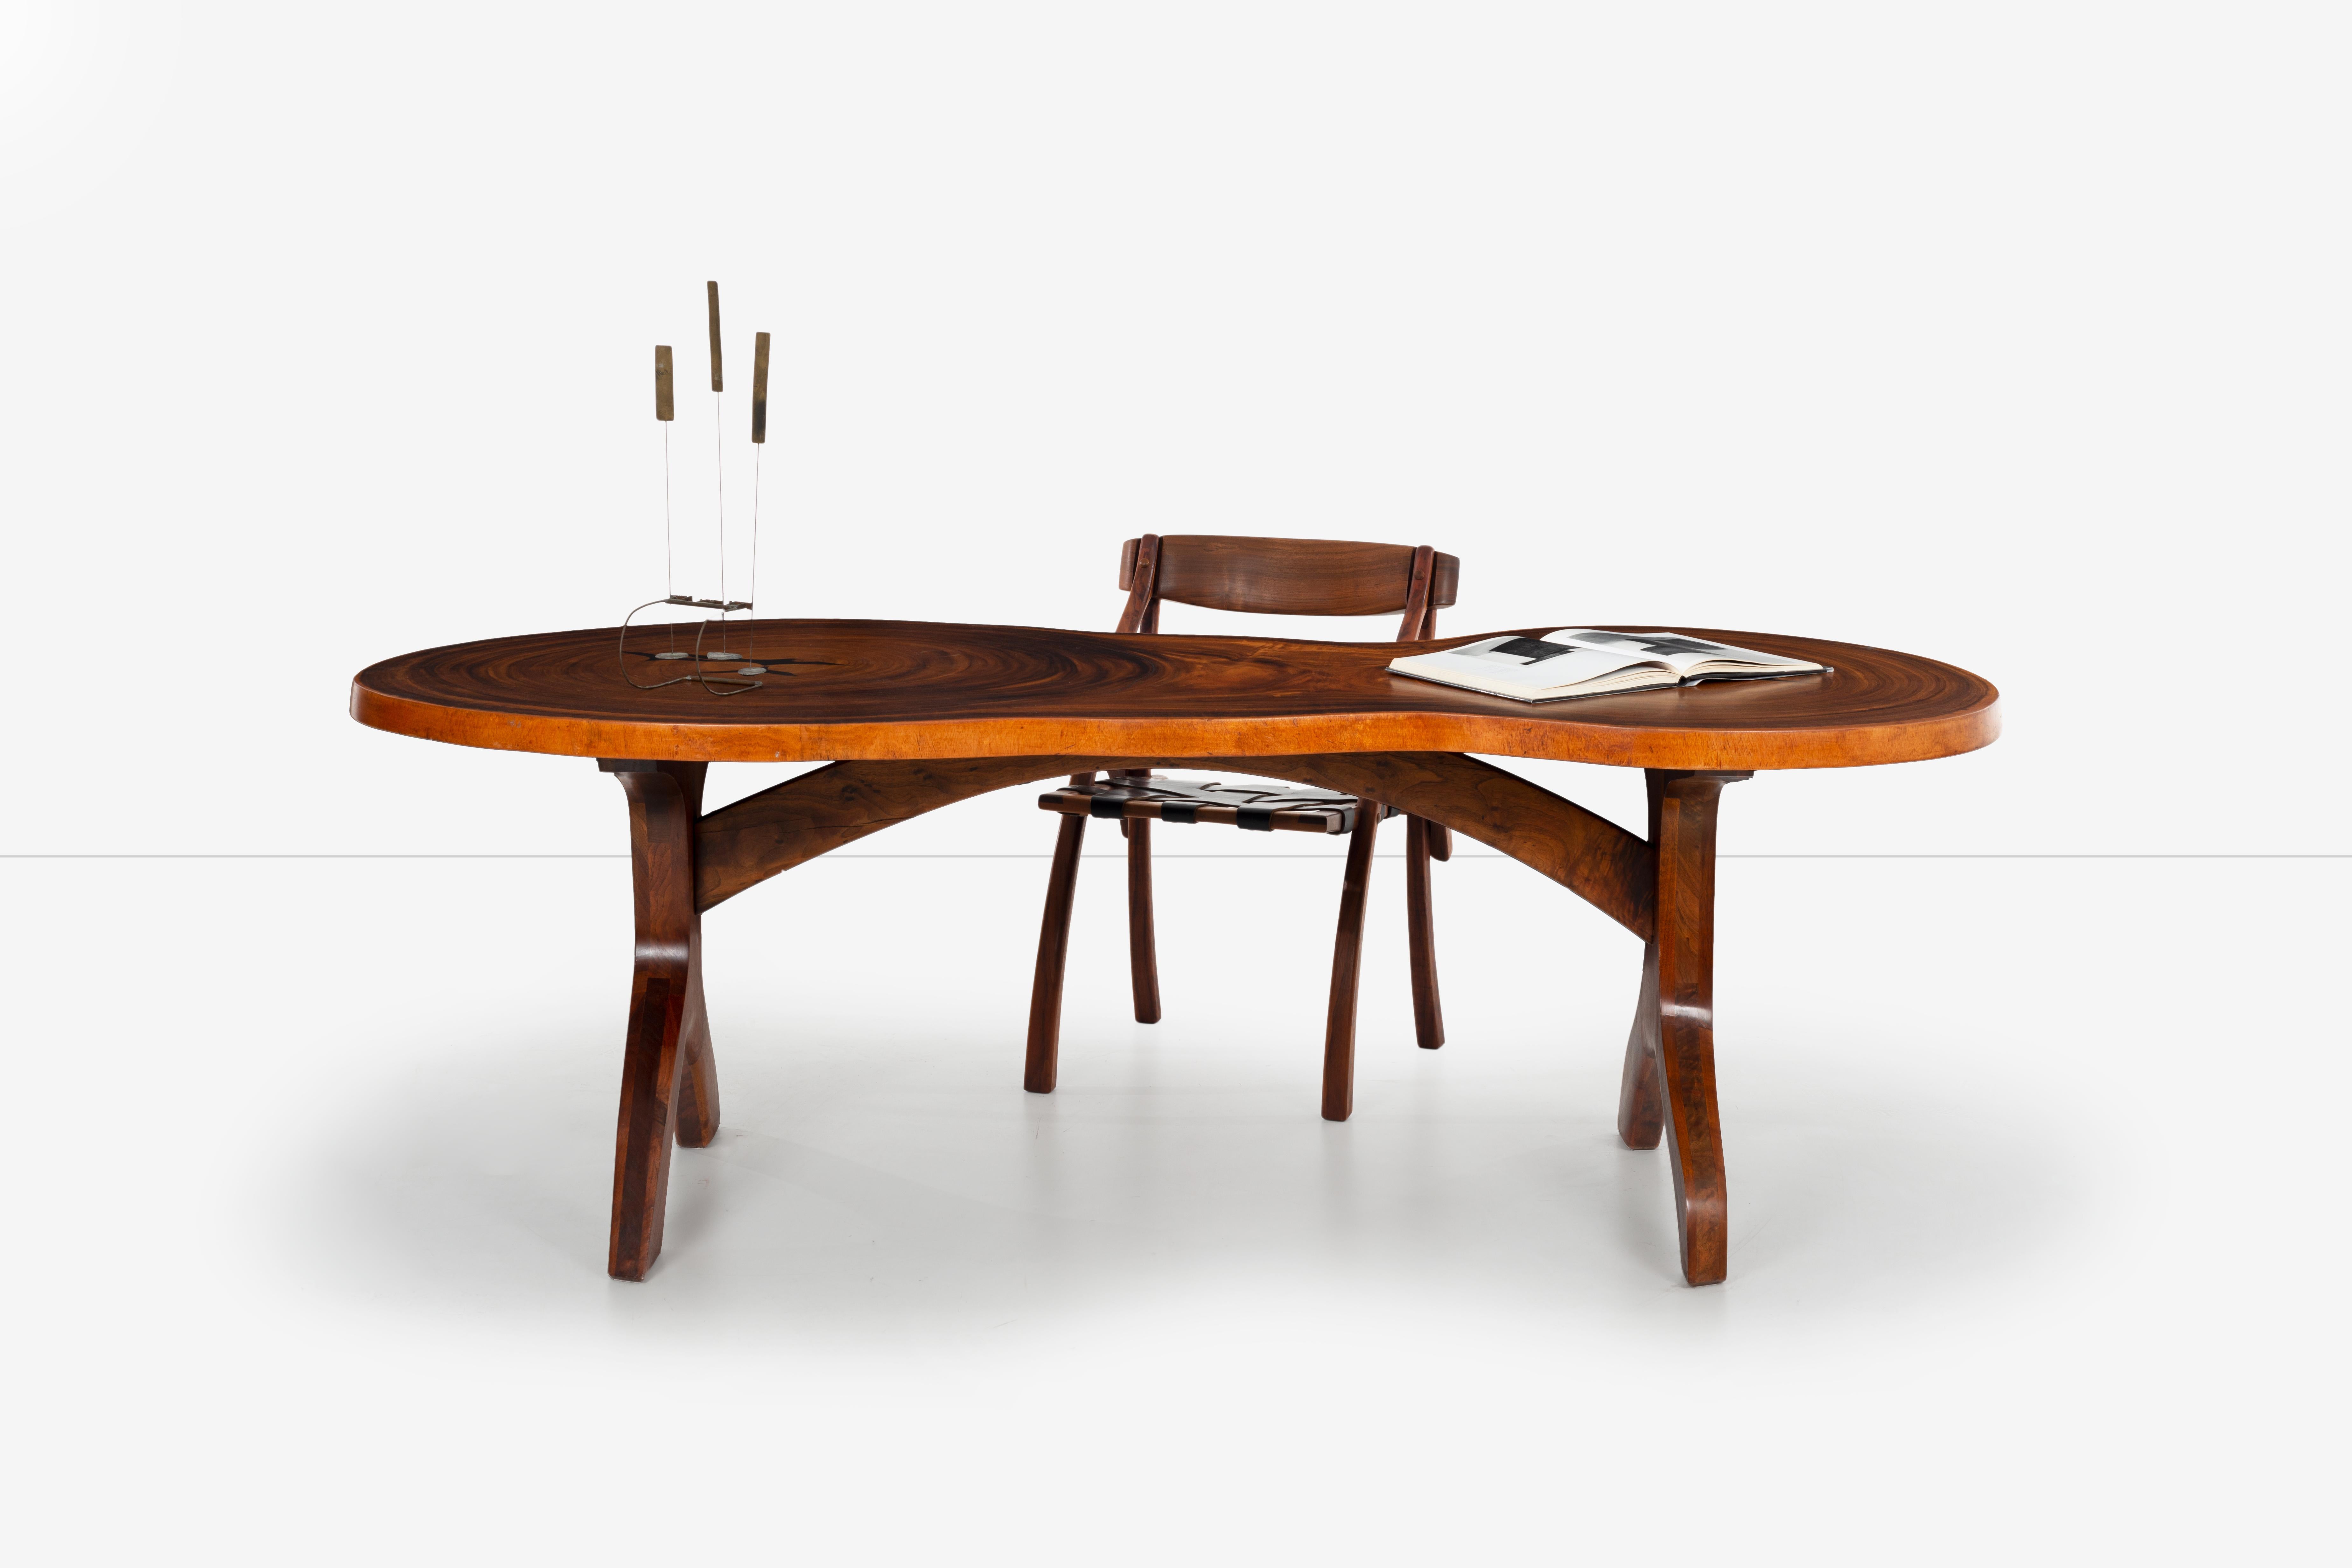 American Craftsman Arthur Espenet Carpenter, bureau de table unique à double tronc en vente